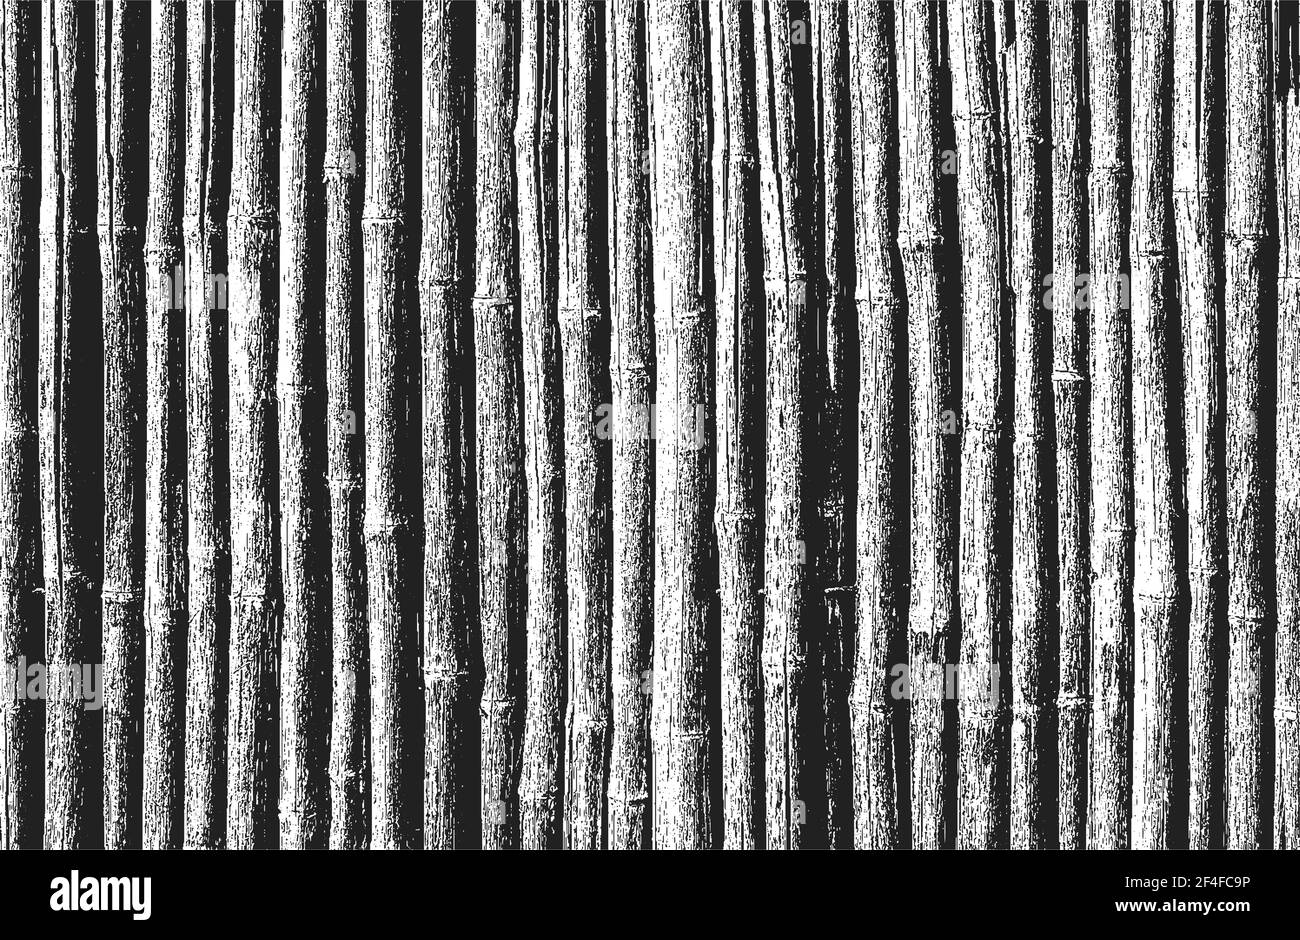 Overlay bambù in difficoltà, struttura di canna indiana, sfondo grunge. Illustrazione vettoriale astratta di mezzitoni Illustrazione Vettoriale